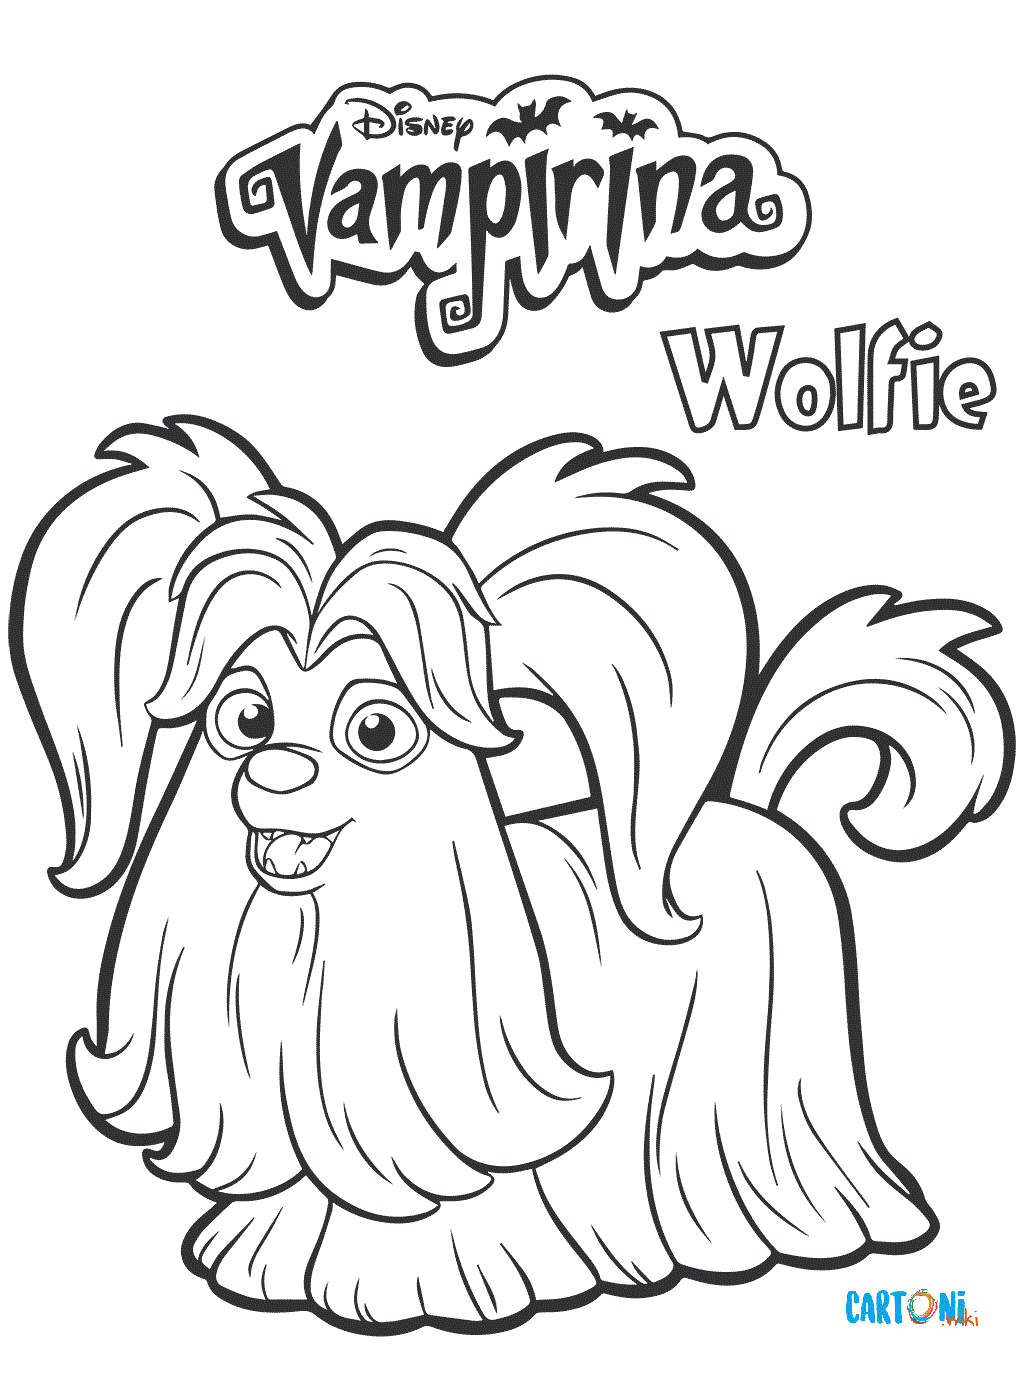 Vampirina personaggio Wolfie da colorare